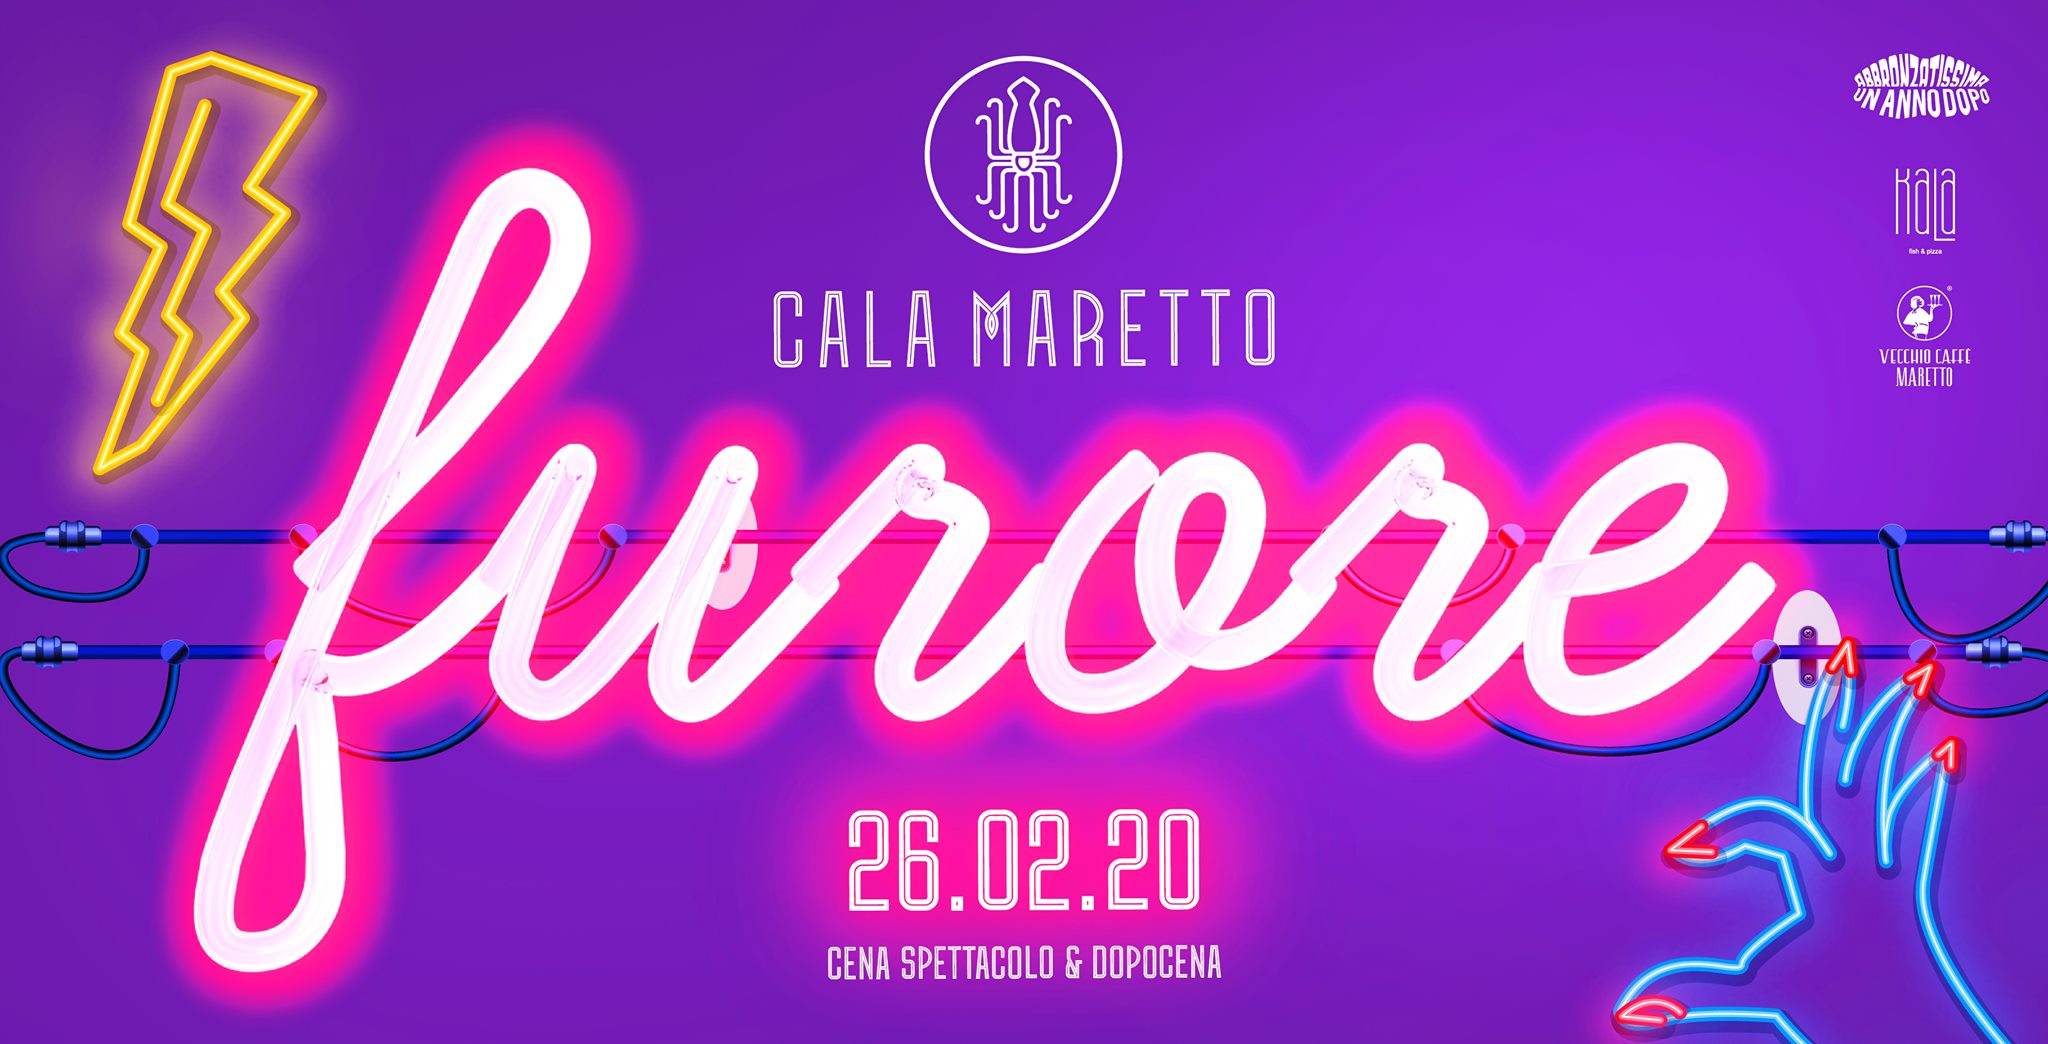 Cala Maretto Civitanova Marche Furore post Carnevale